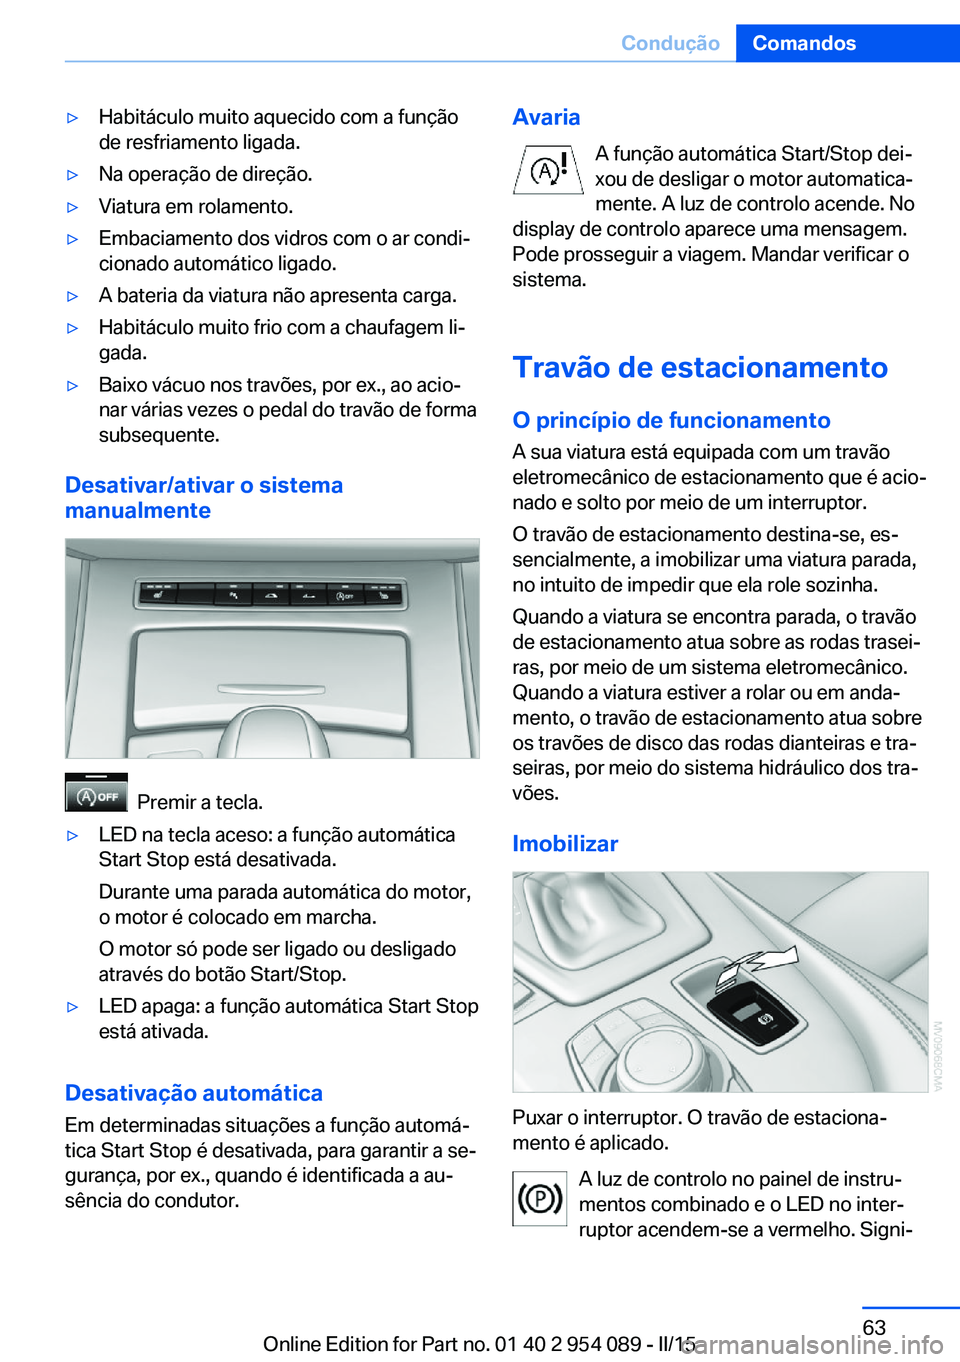 BMW Z4 2016  Manual do condutor (in Portuguese) ▷Habitáculo muito aquecido com a função
de resfriamento ligada.▷Na operação de direção.▷Viatura em rolamento.▷Embaciamento dos vidros com o ar condi‐
cionado automático ligado.▷A b